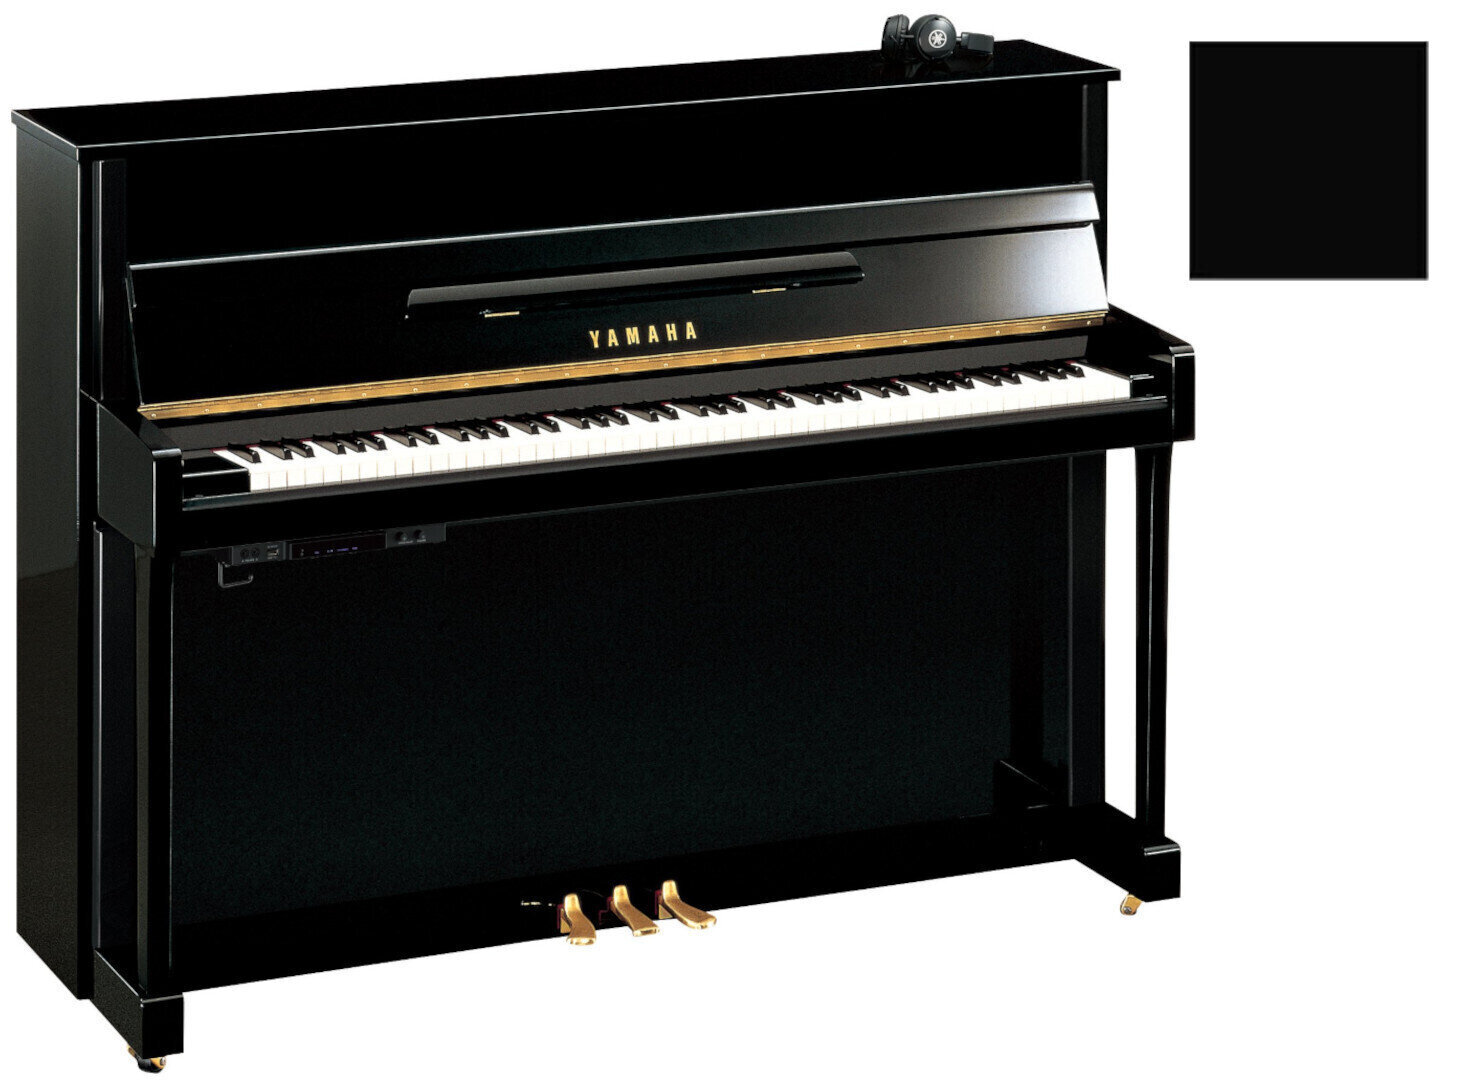 Klavier, Piano Yamaha B2 SC2 Silent Piano Polished Ebony with Chrome